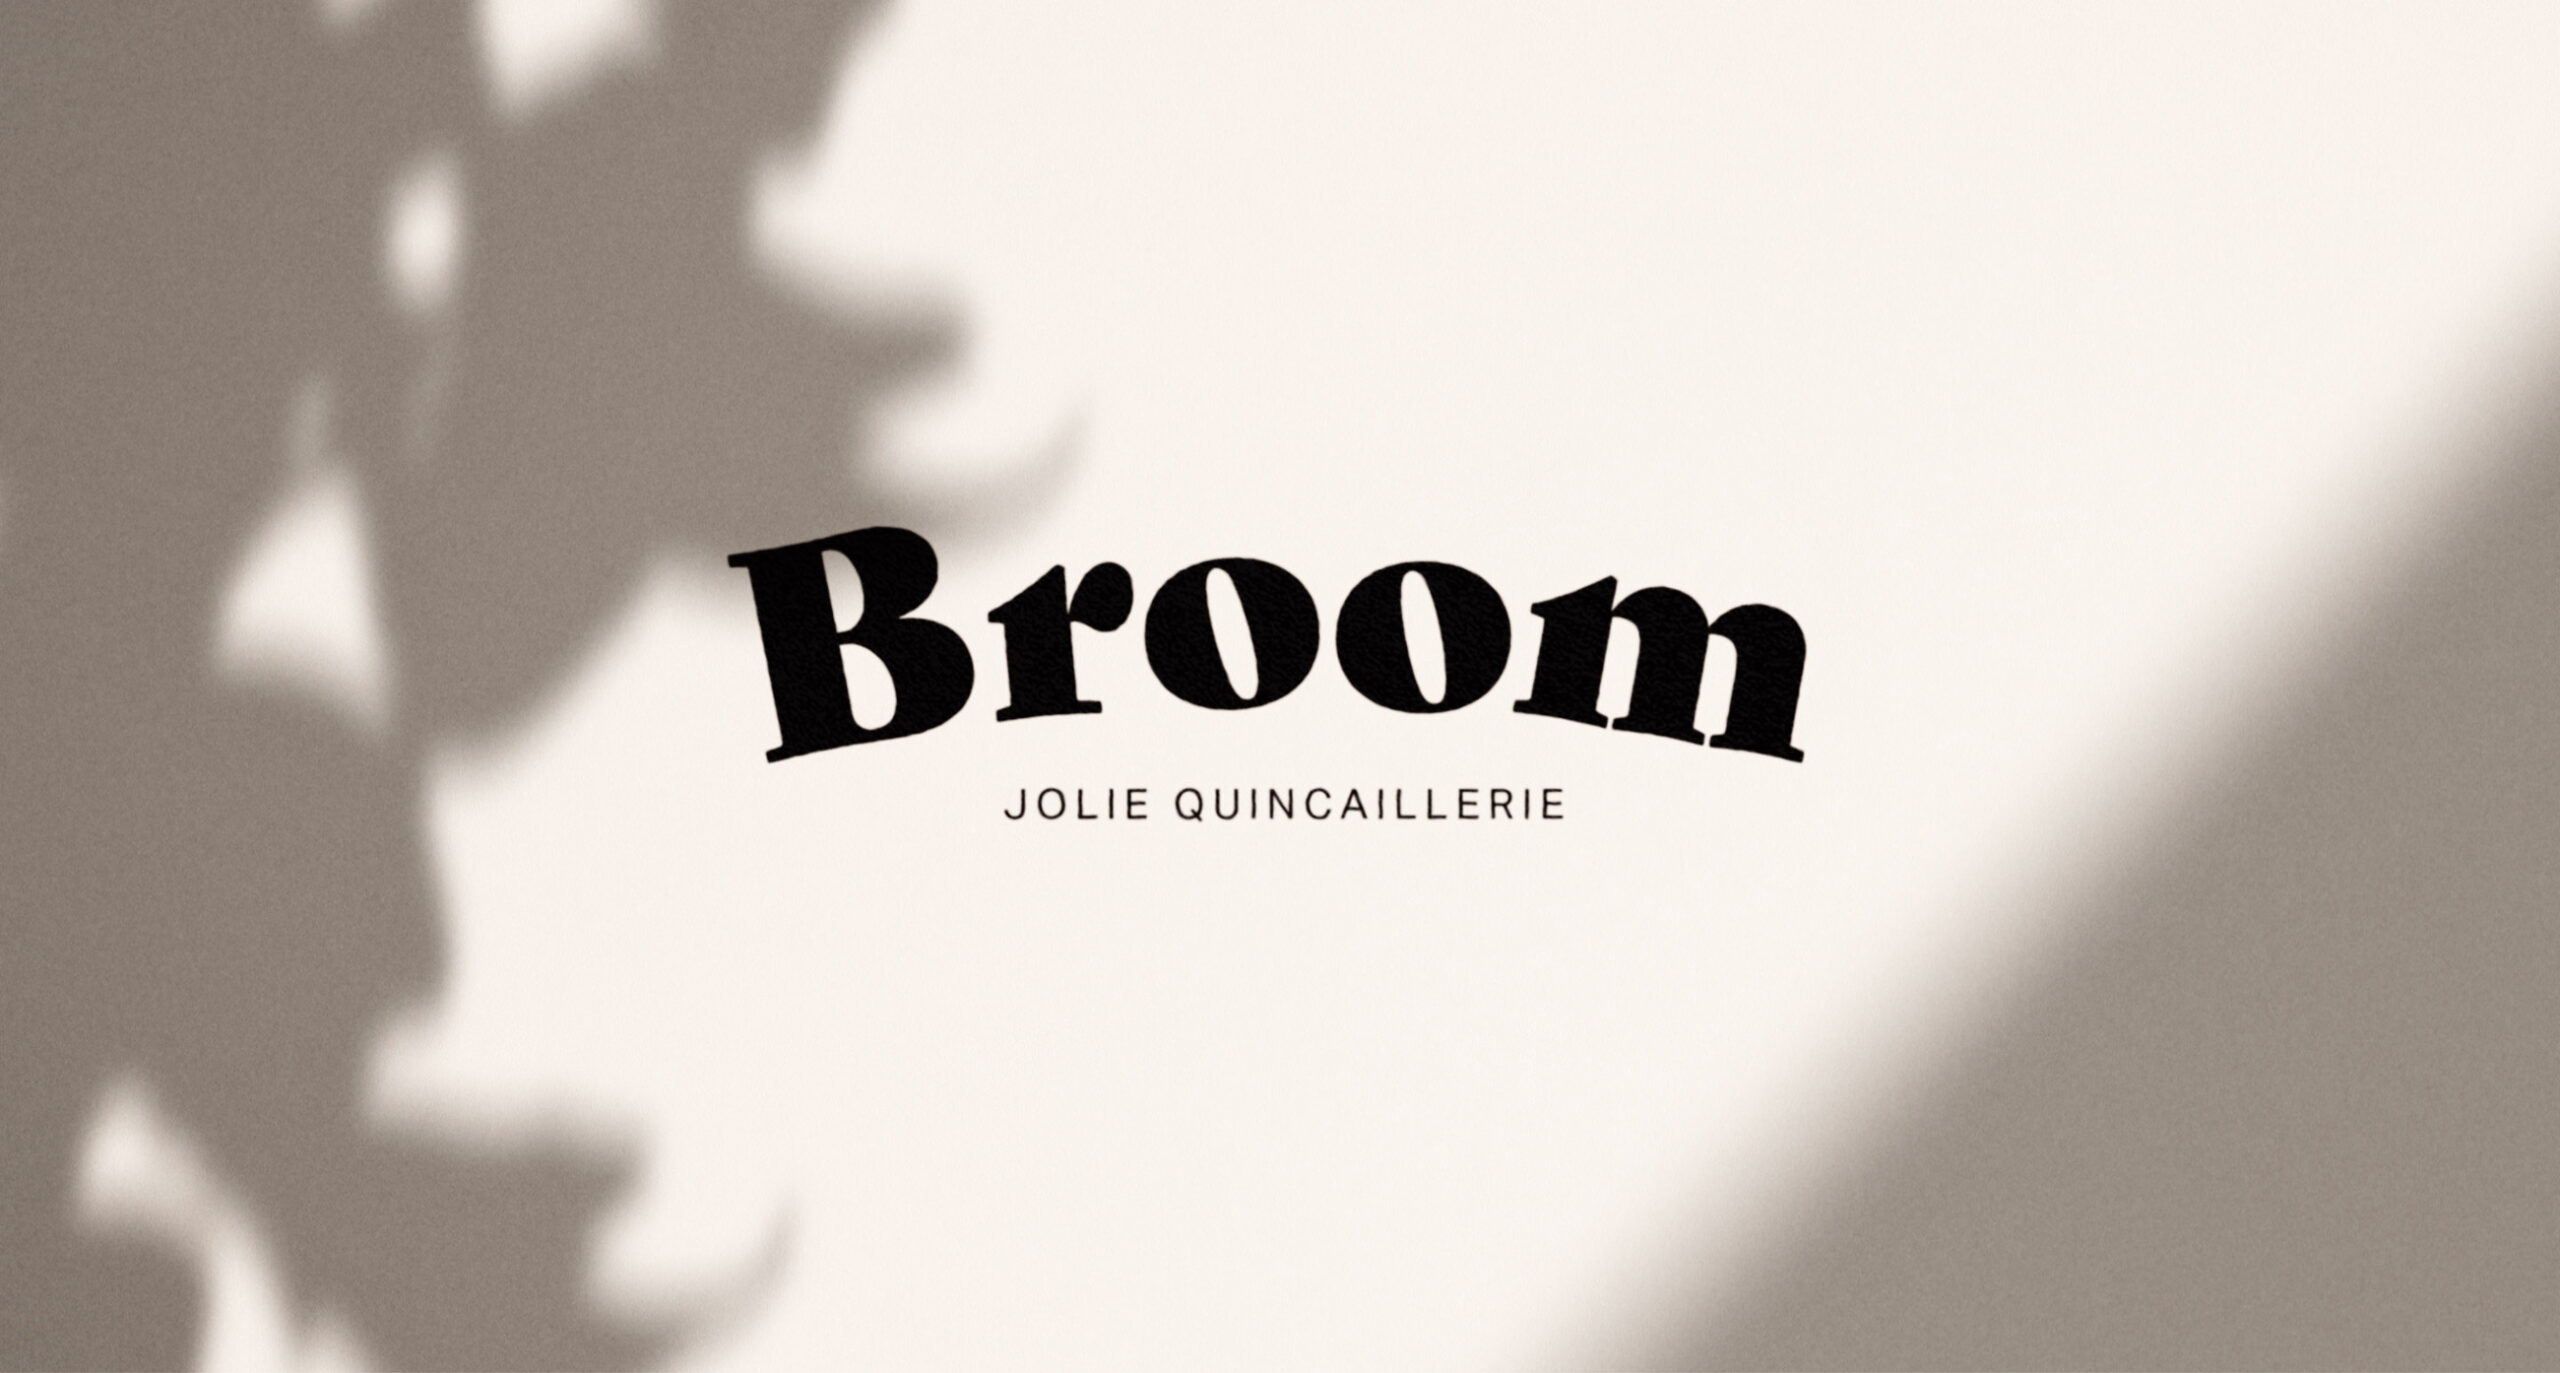 Broom, jolie quincaillerie